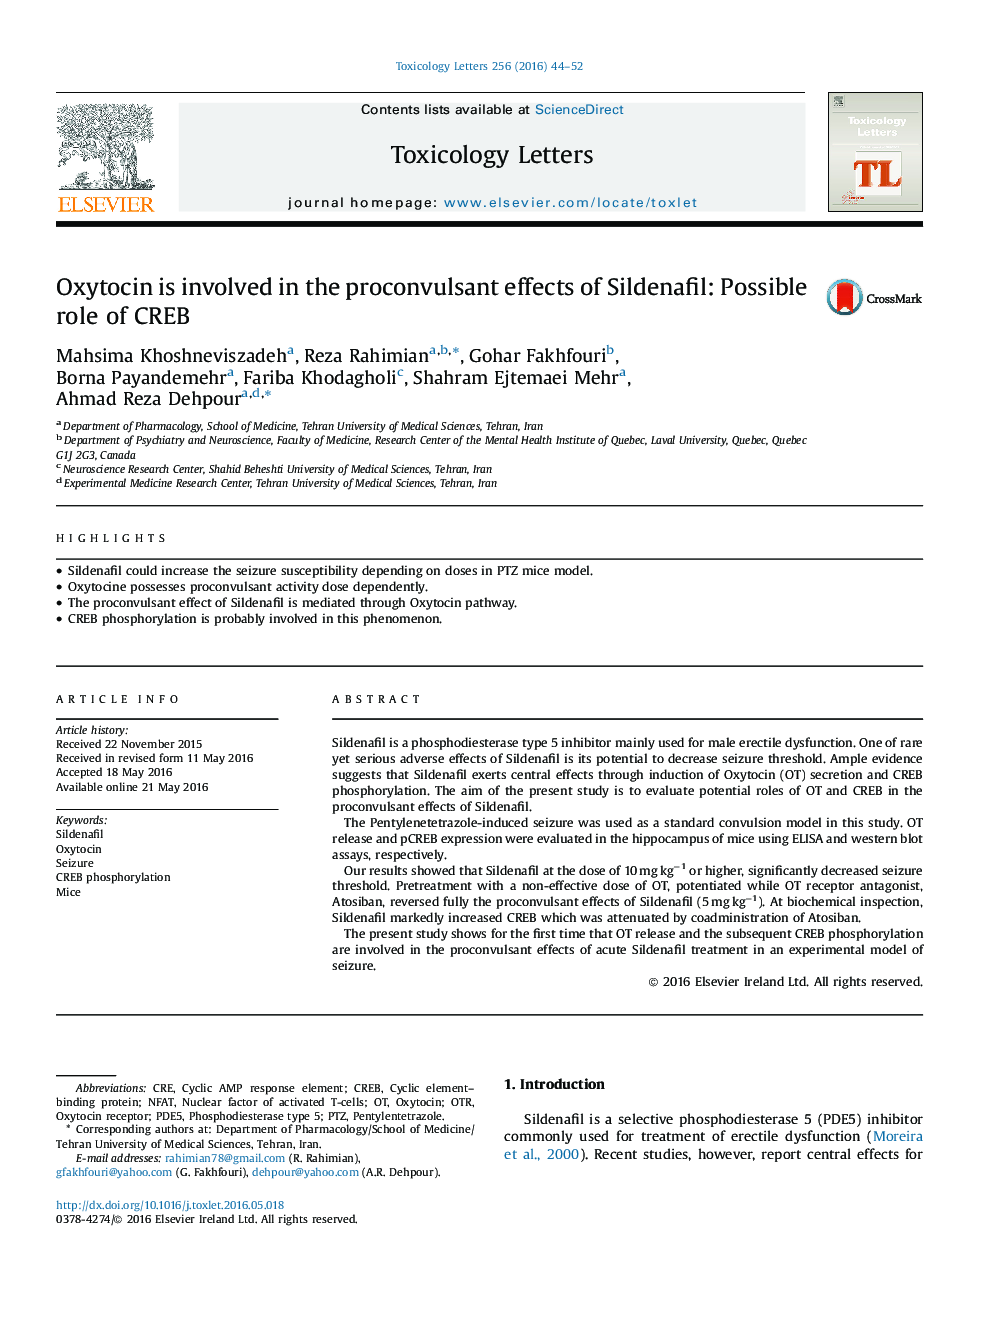 اکسی توسین درگیر در اثرات تشنج‌زای سیلدنافیل: نقش احتمالی CREB